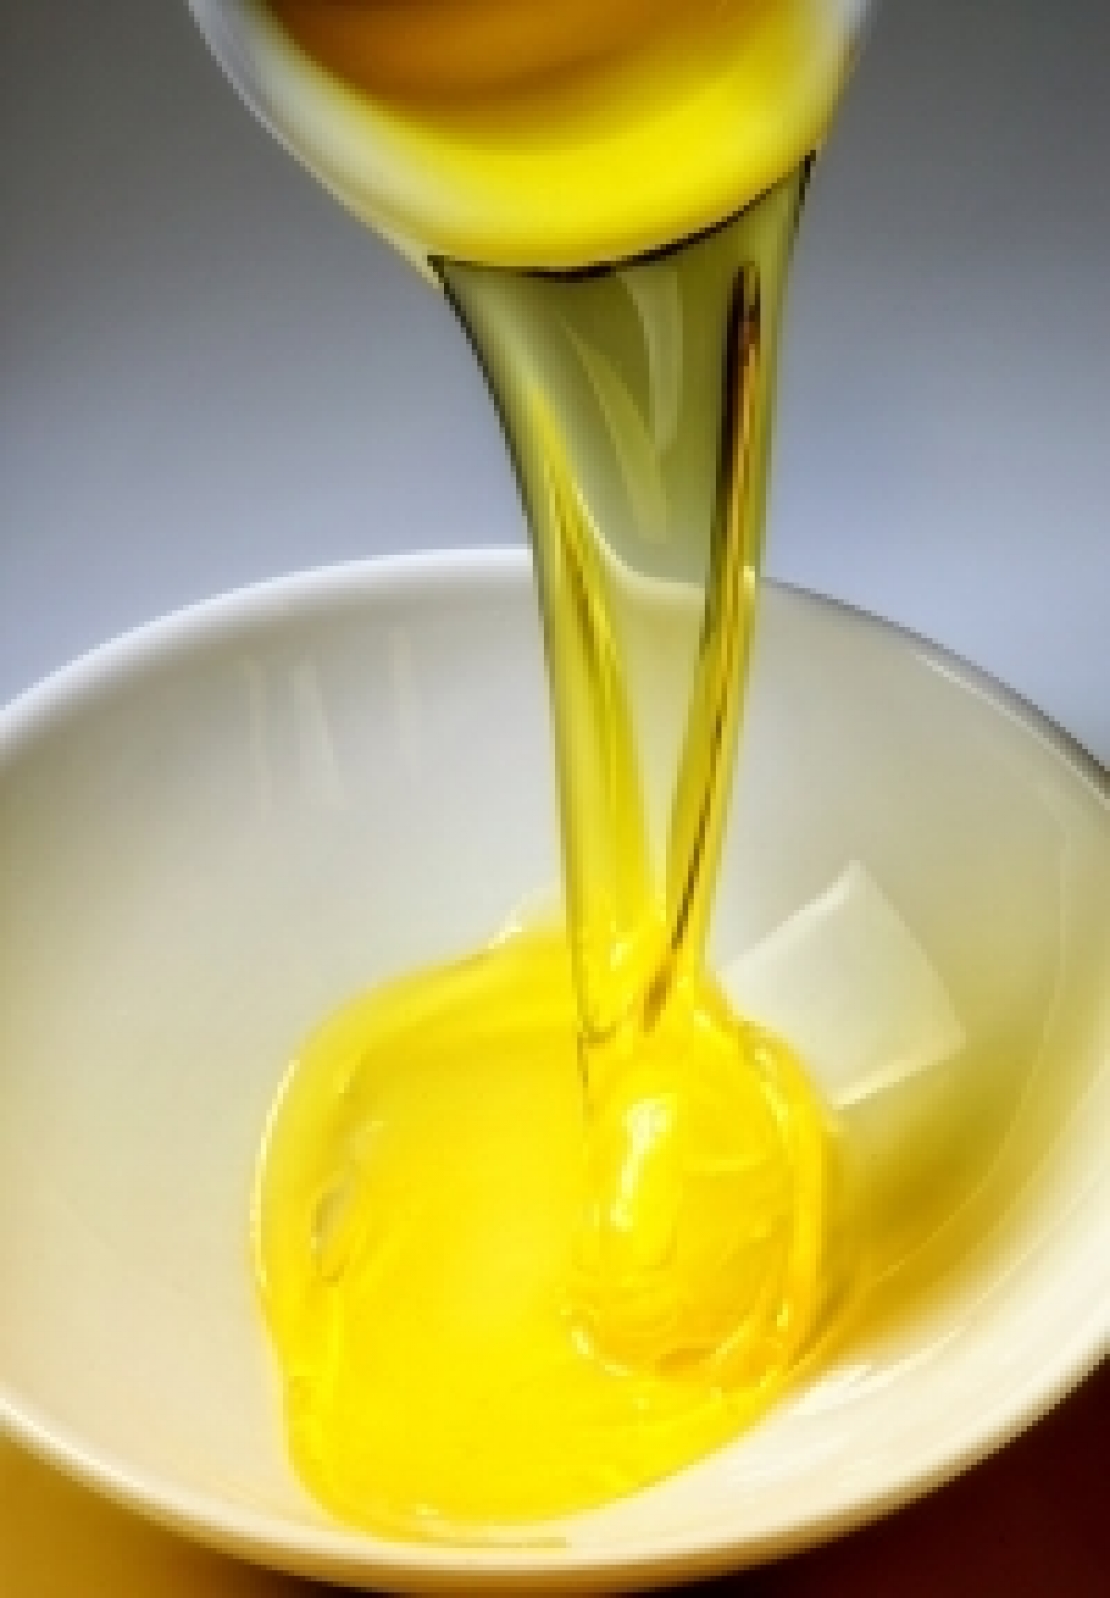 Stock finali di olio d'oliva a fine campagna a poco più di 300 mila tonnellate